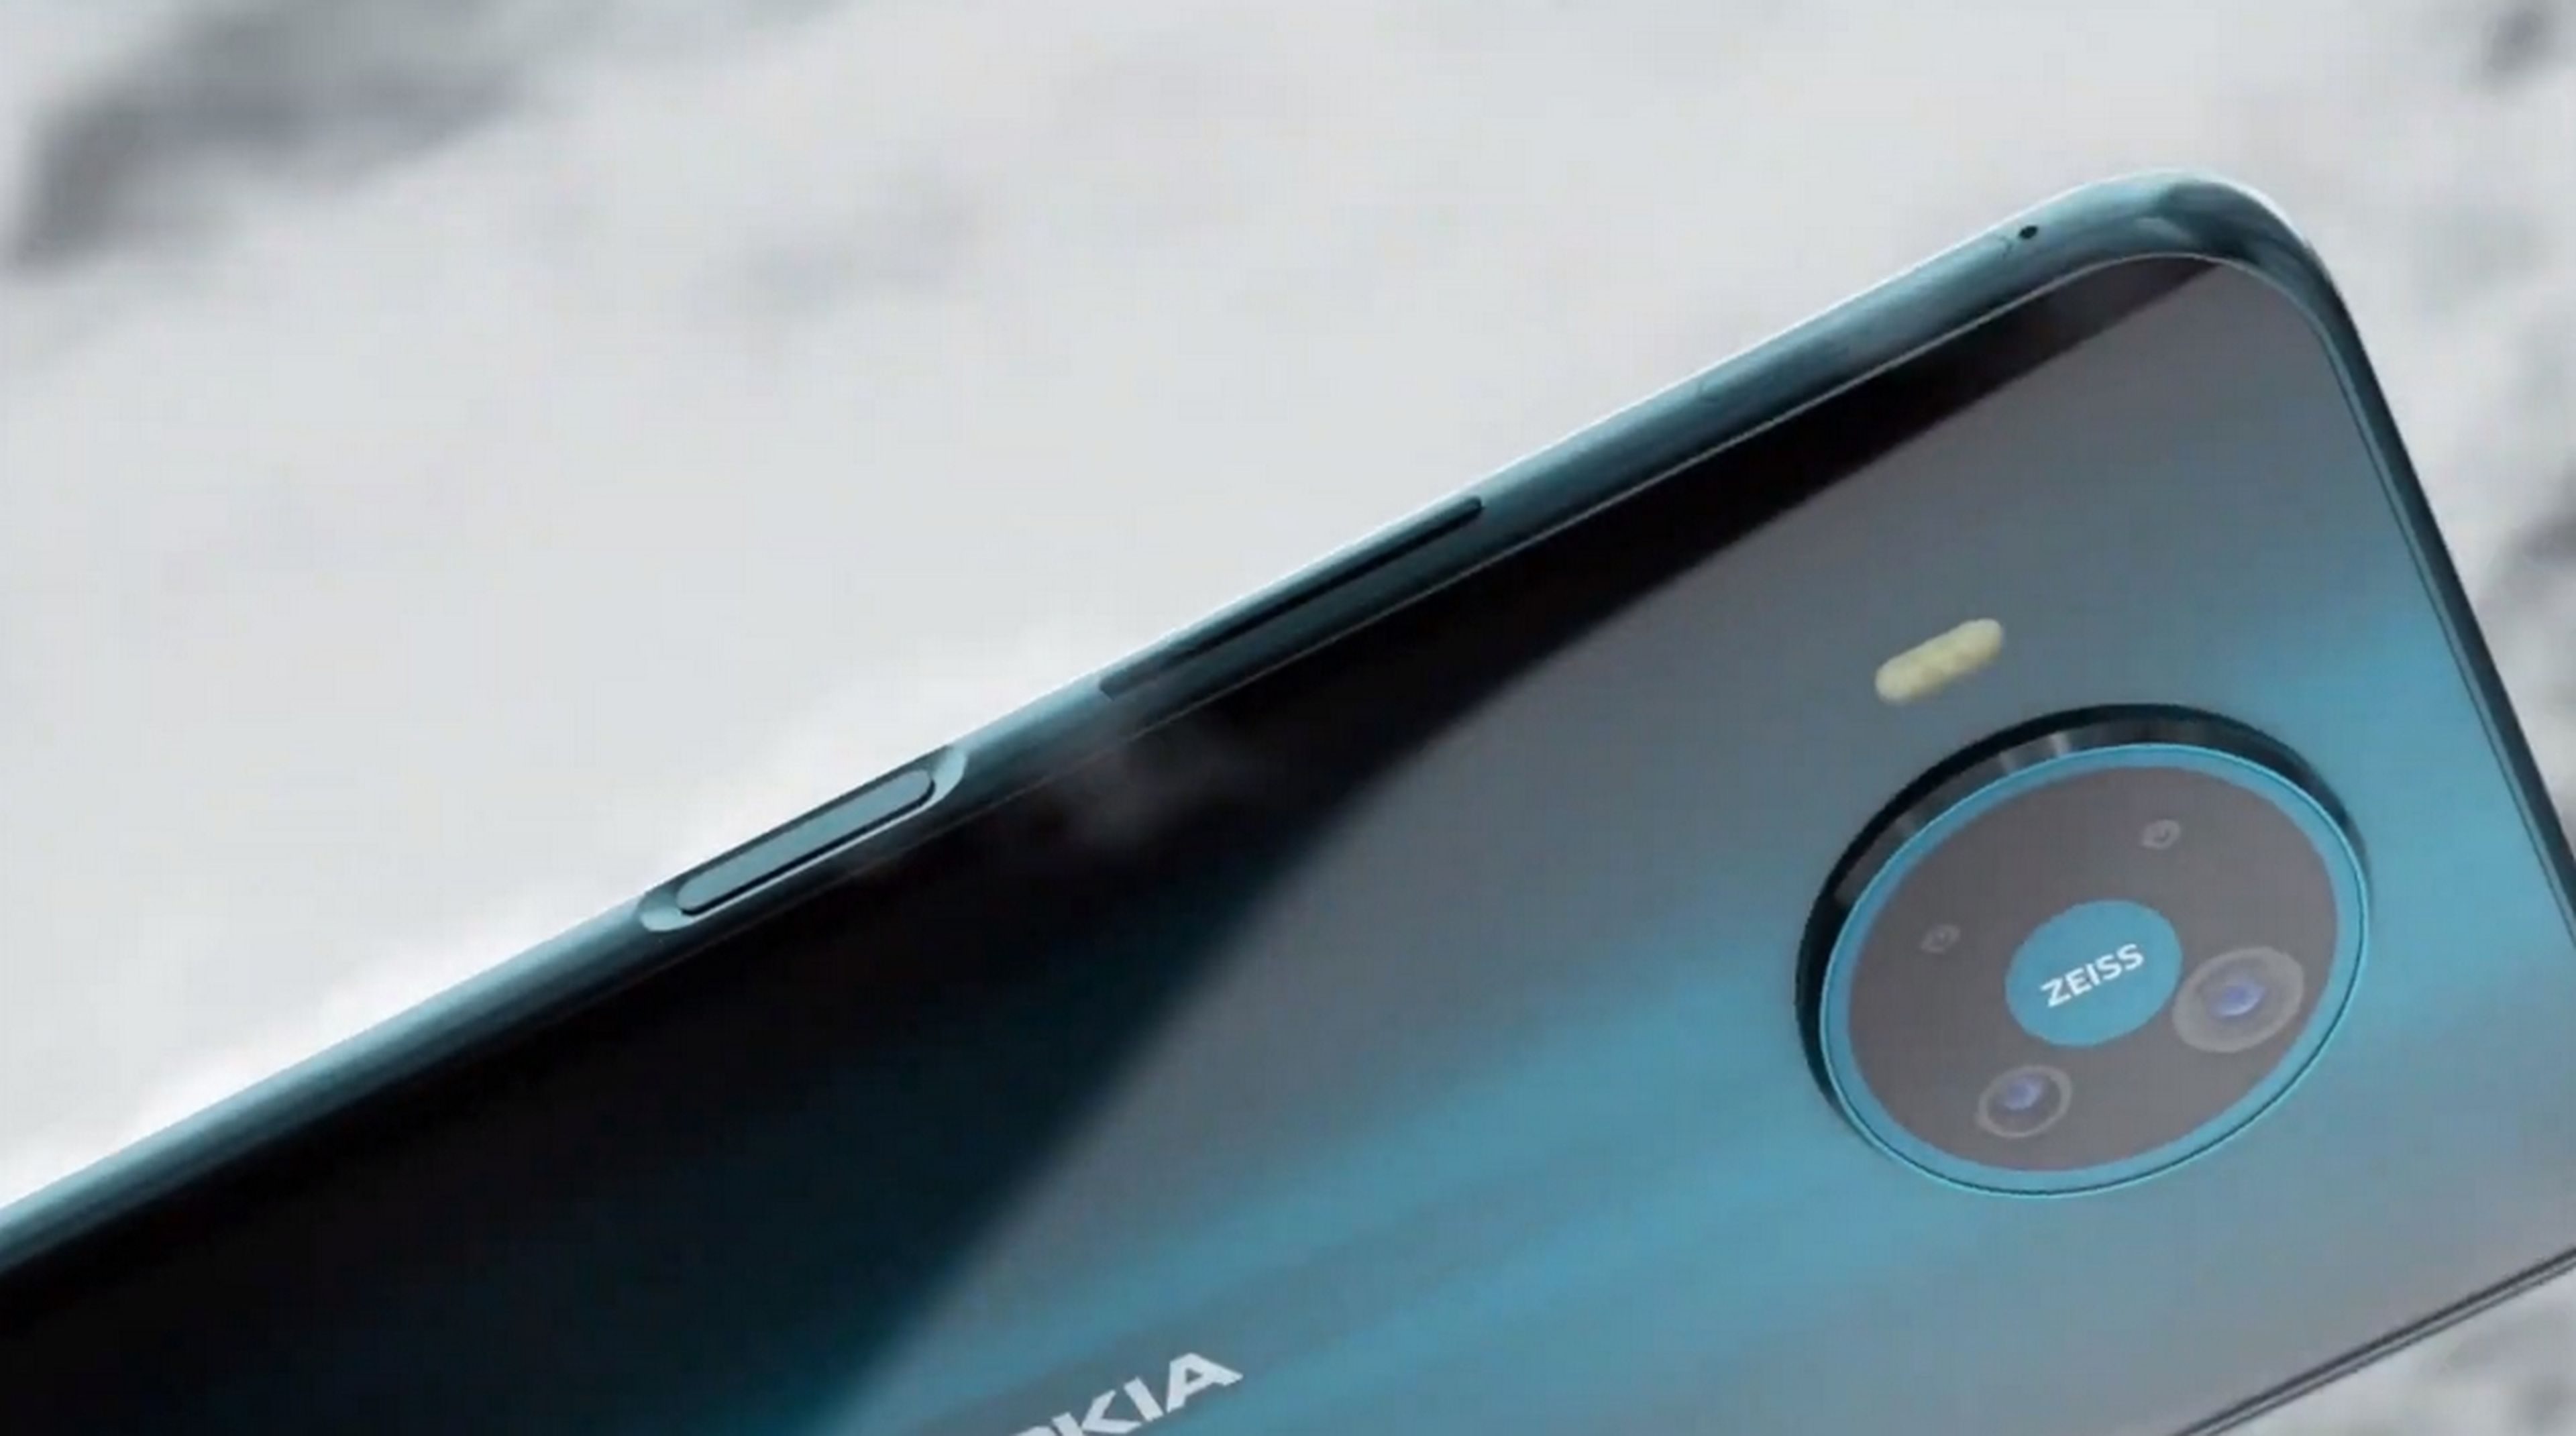 Nokia pone a la venta su primer móvil 5G, móviles baratos, auriculares y un altavoz